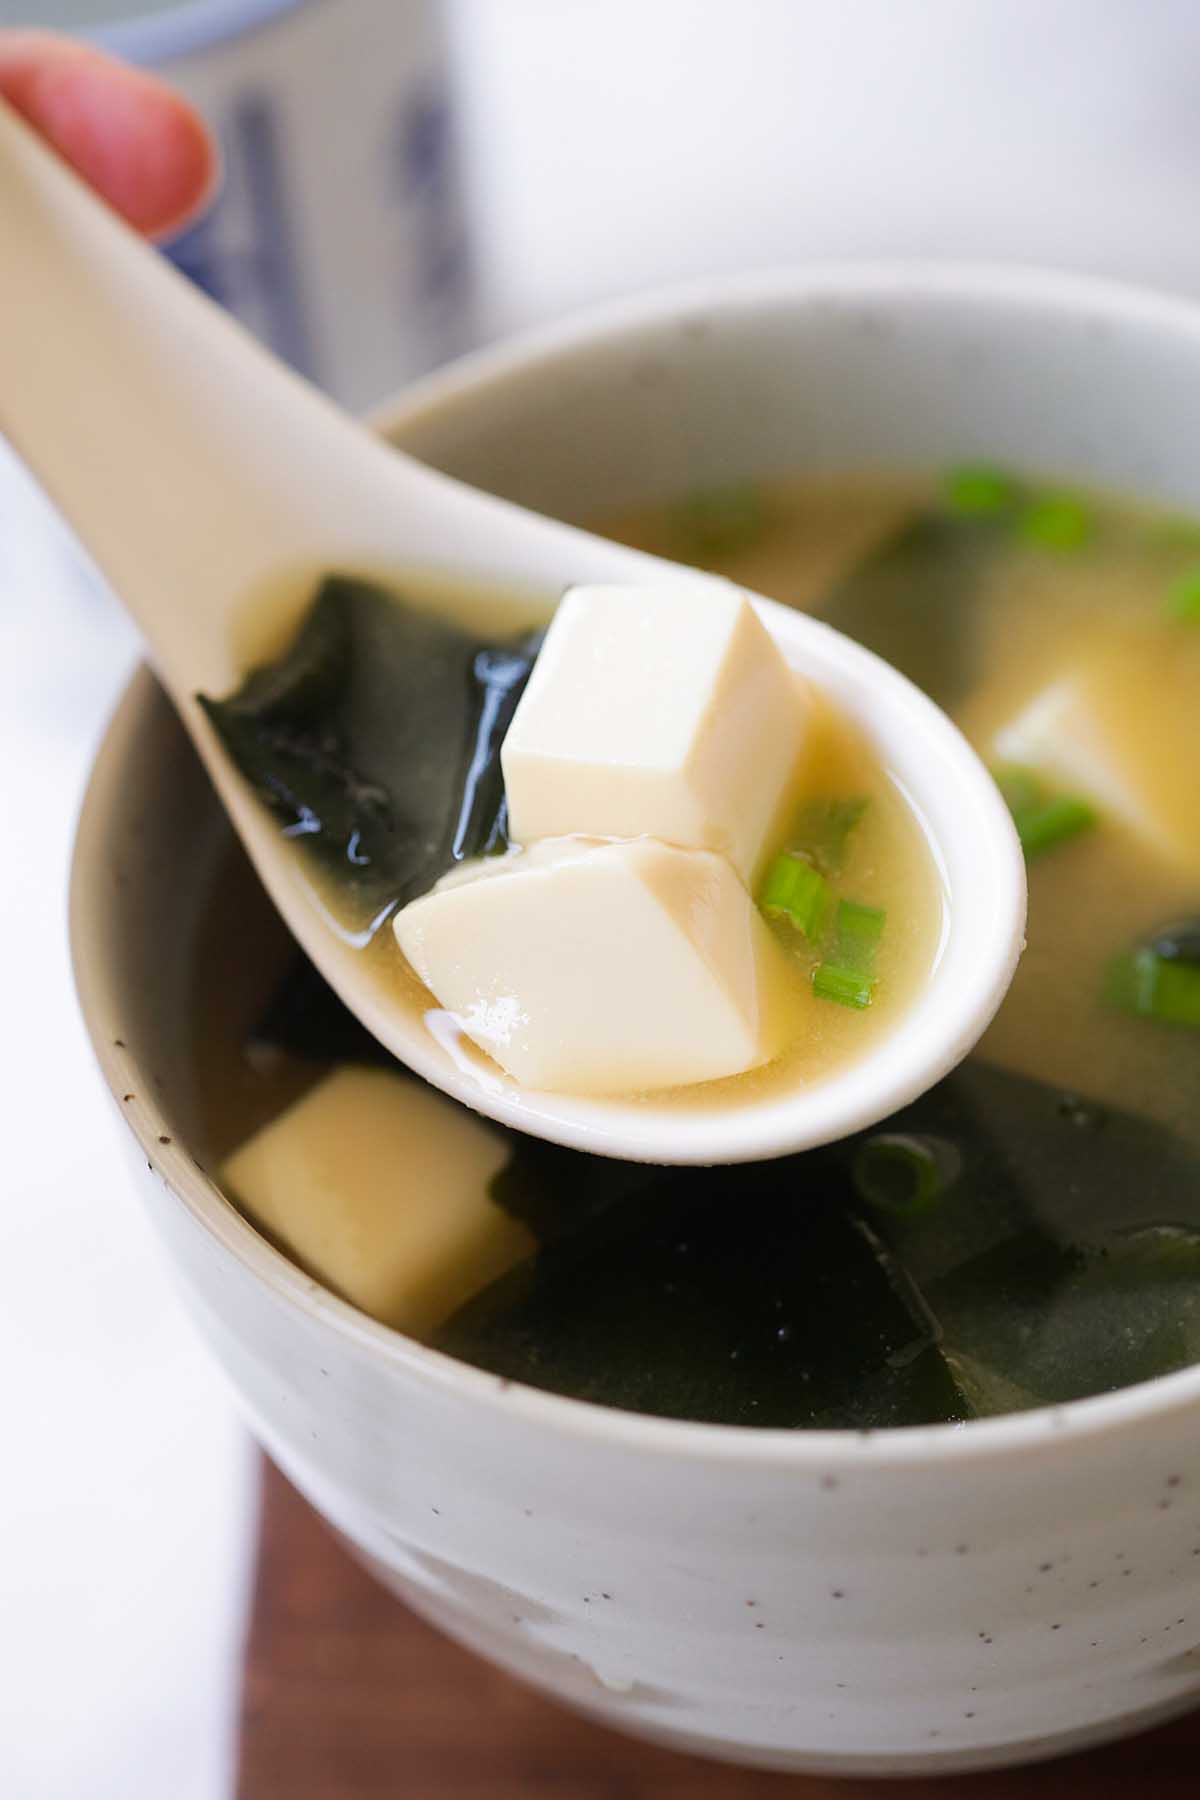 Miso soup, ready to serve.